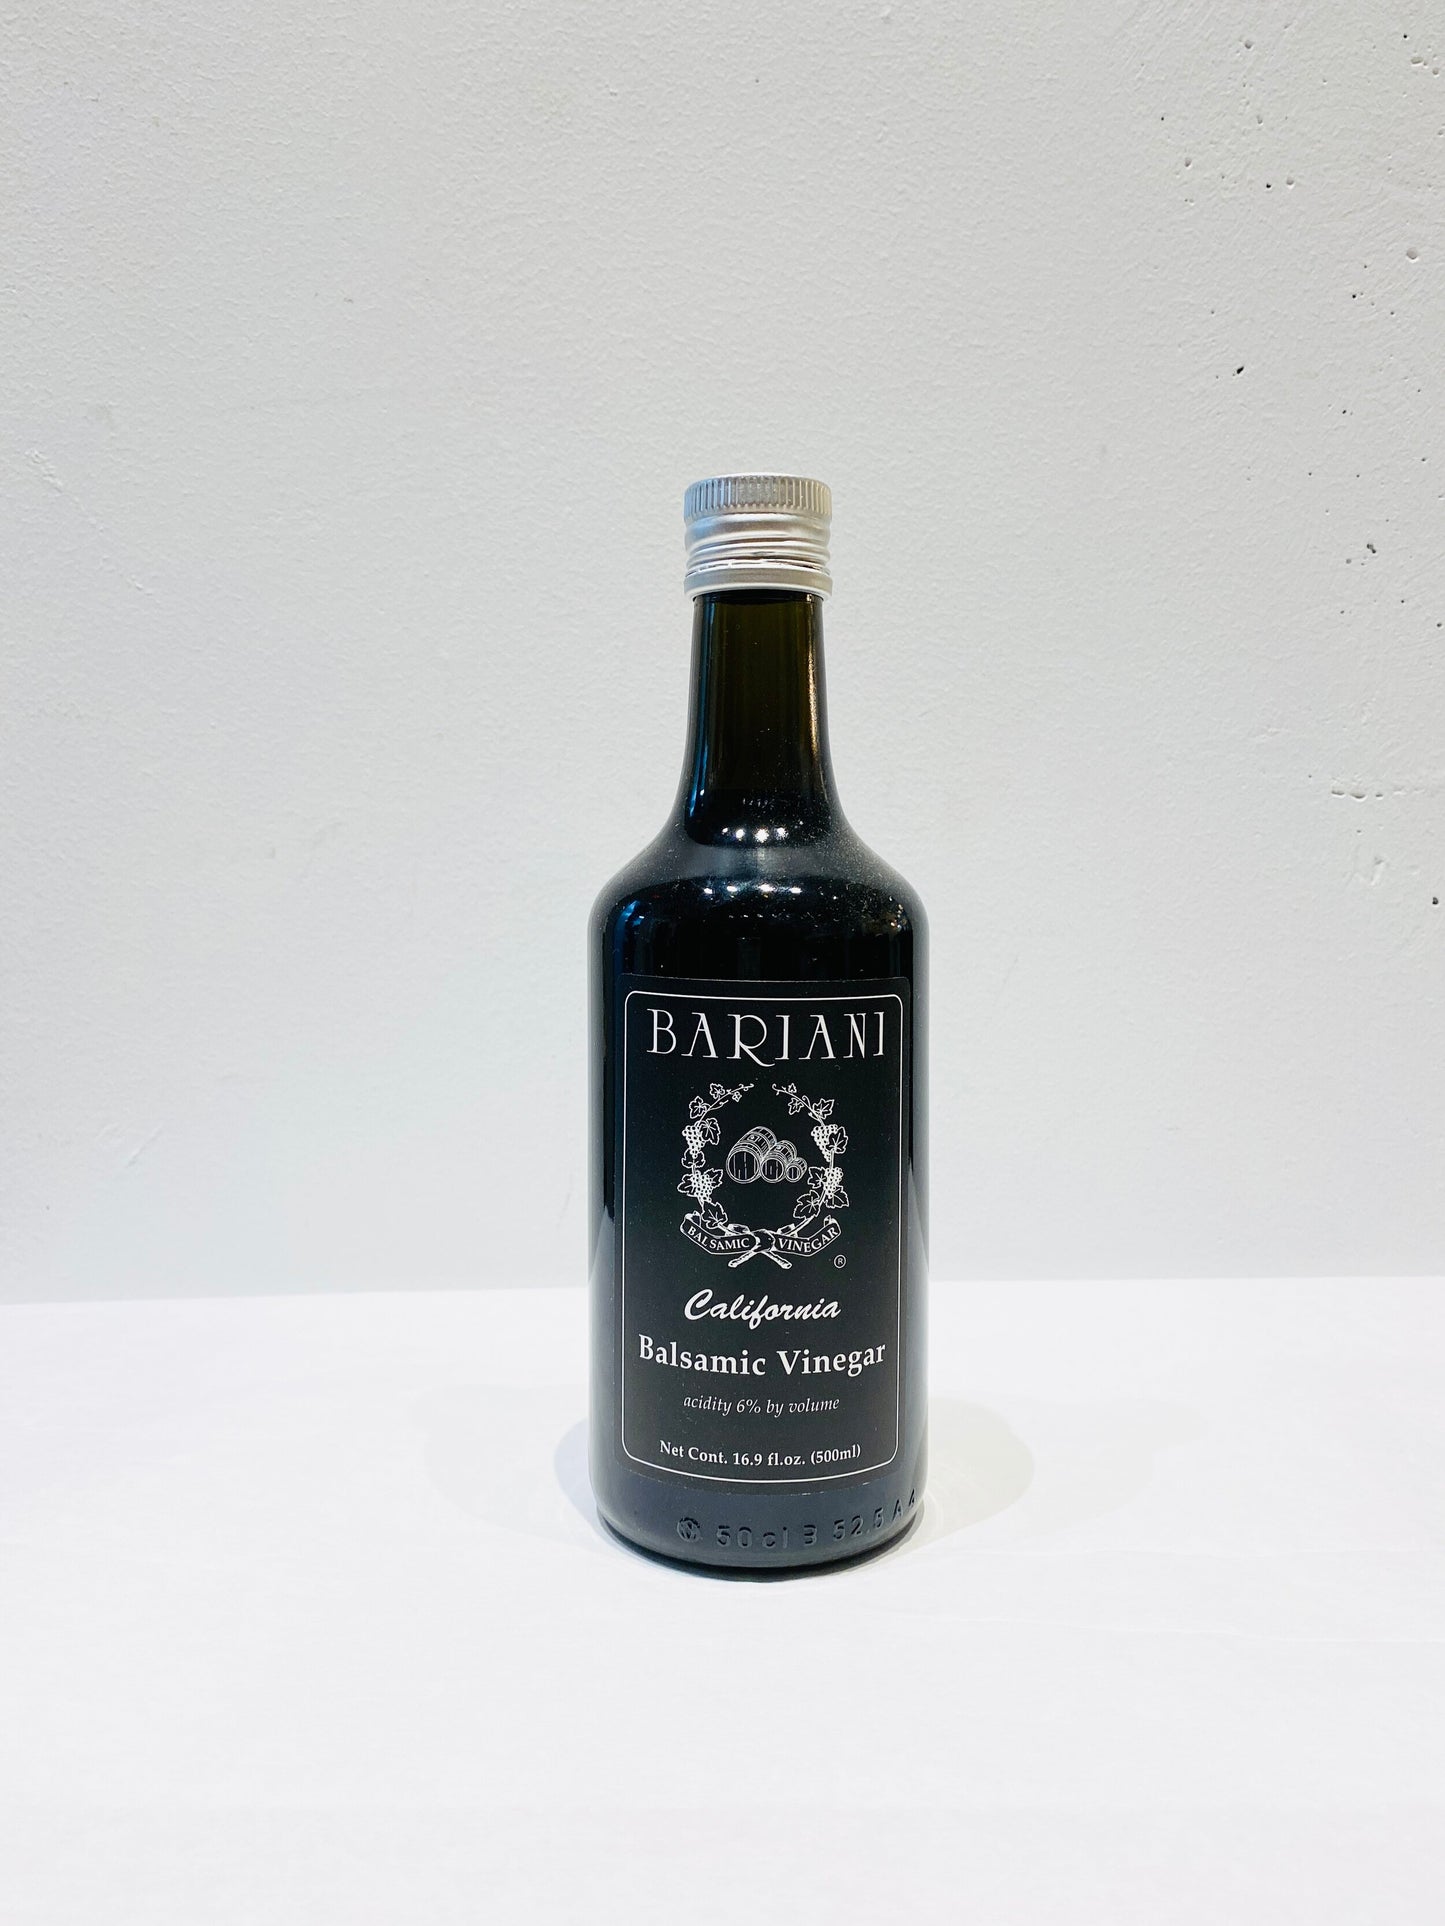 Bariani Balsamic Vinegar